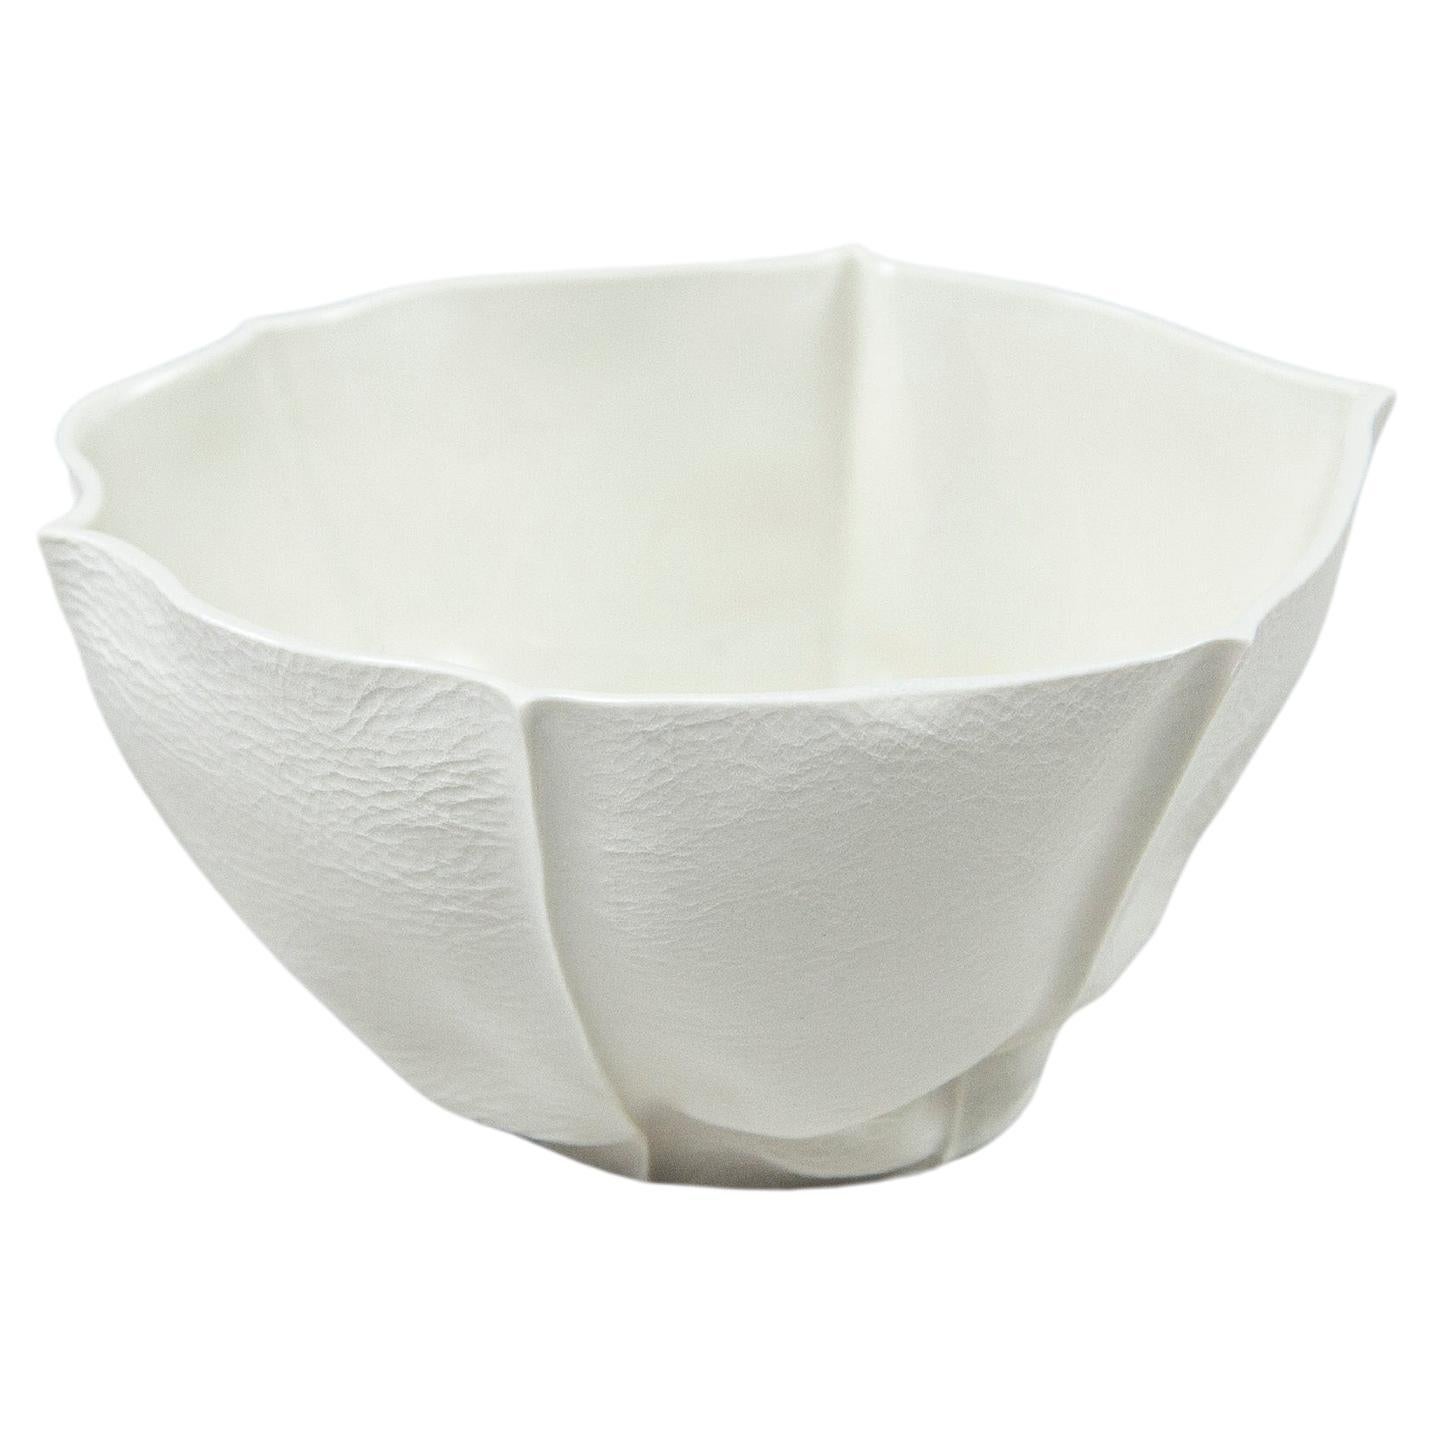 Bol Kawa en porcelaine blanche, récipient en céramique moulée en cuir, forme organique, en stock